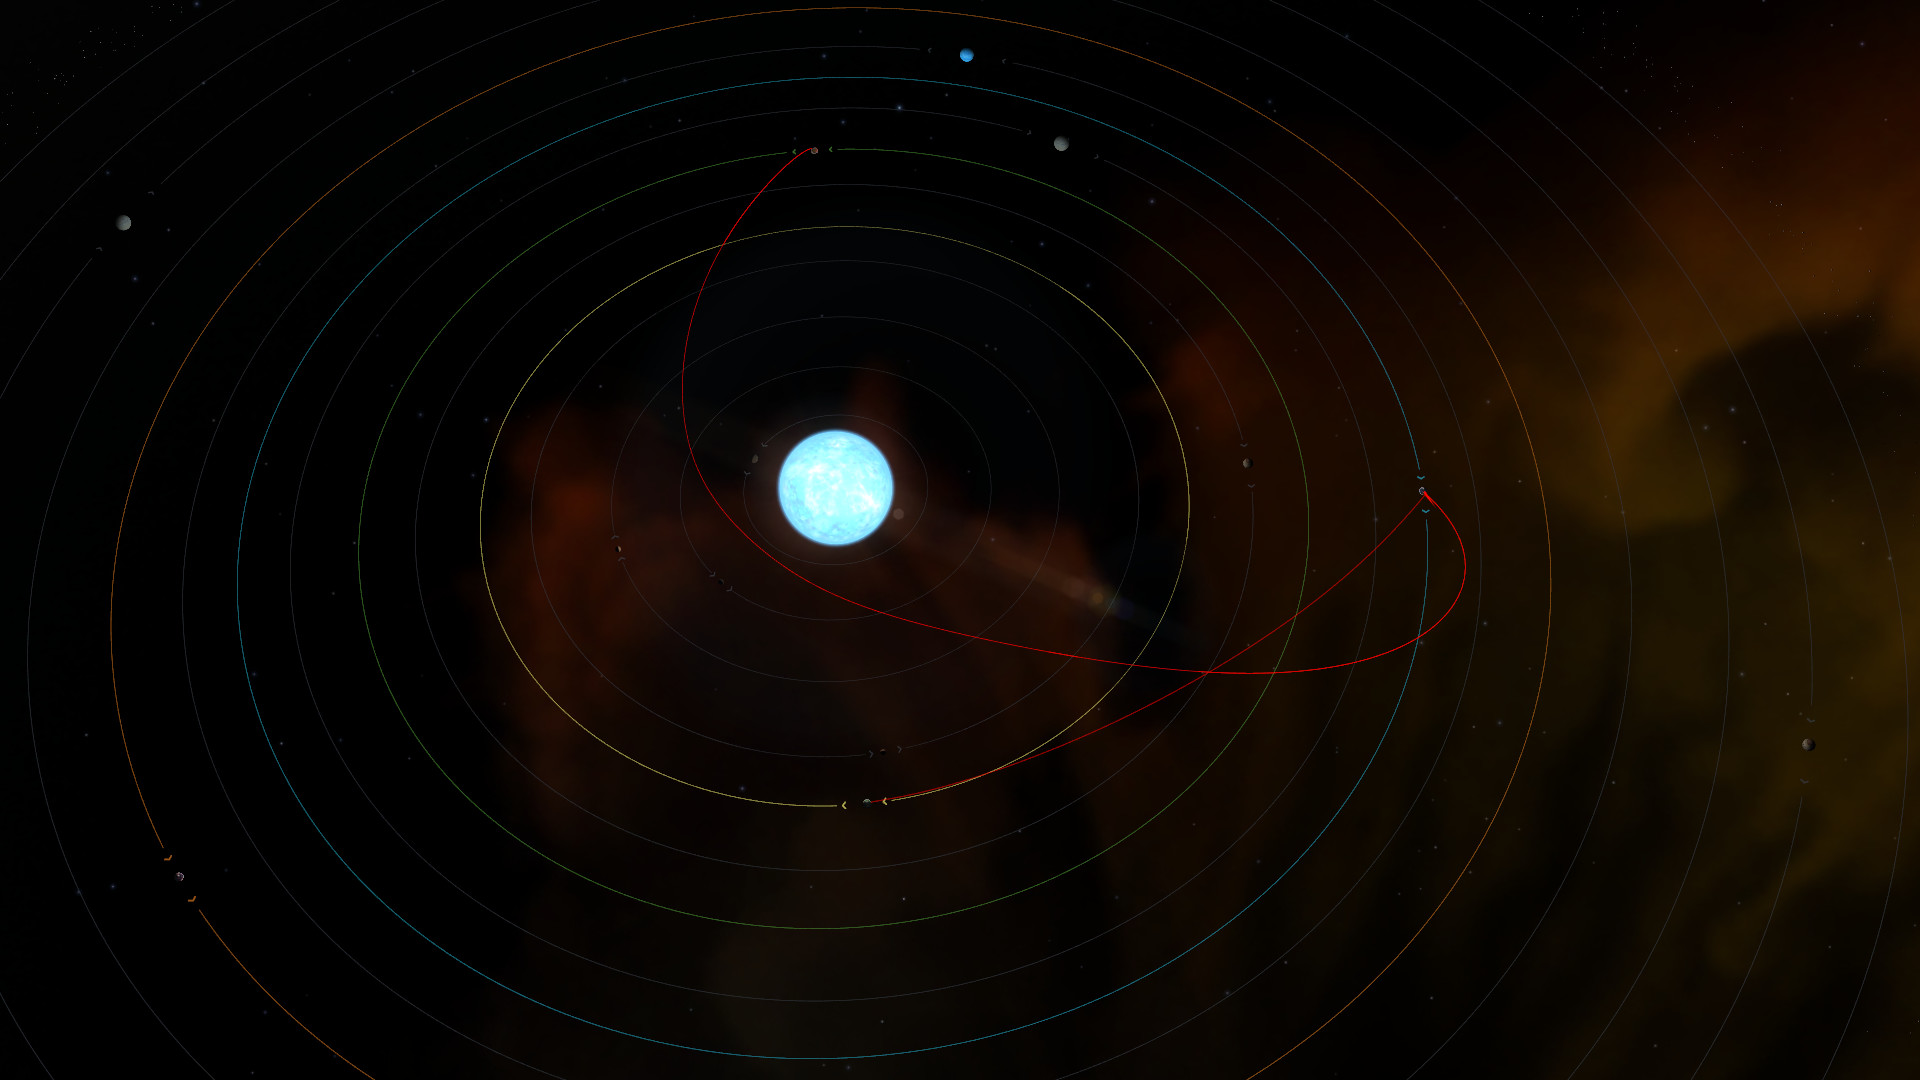 Interplanetary screenshot